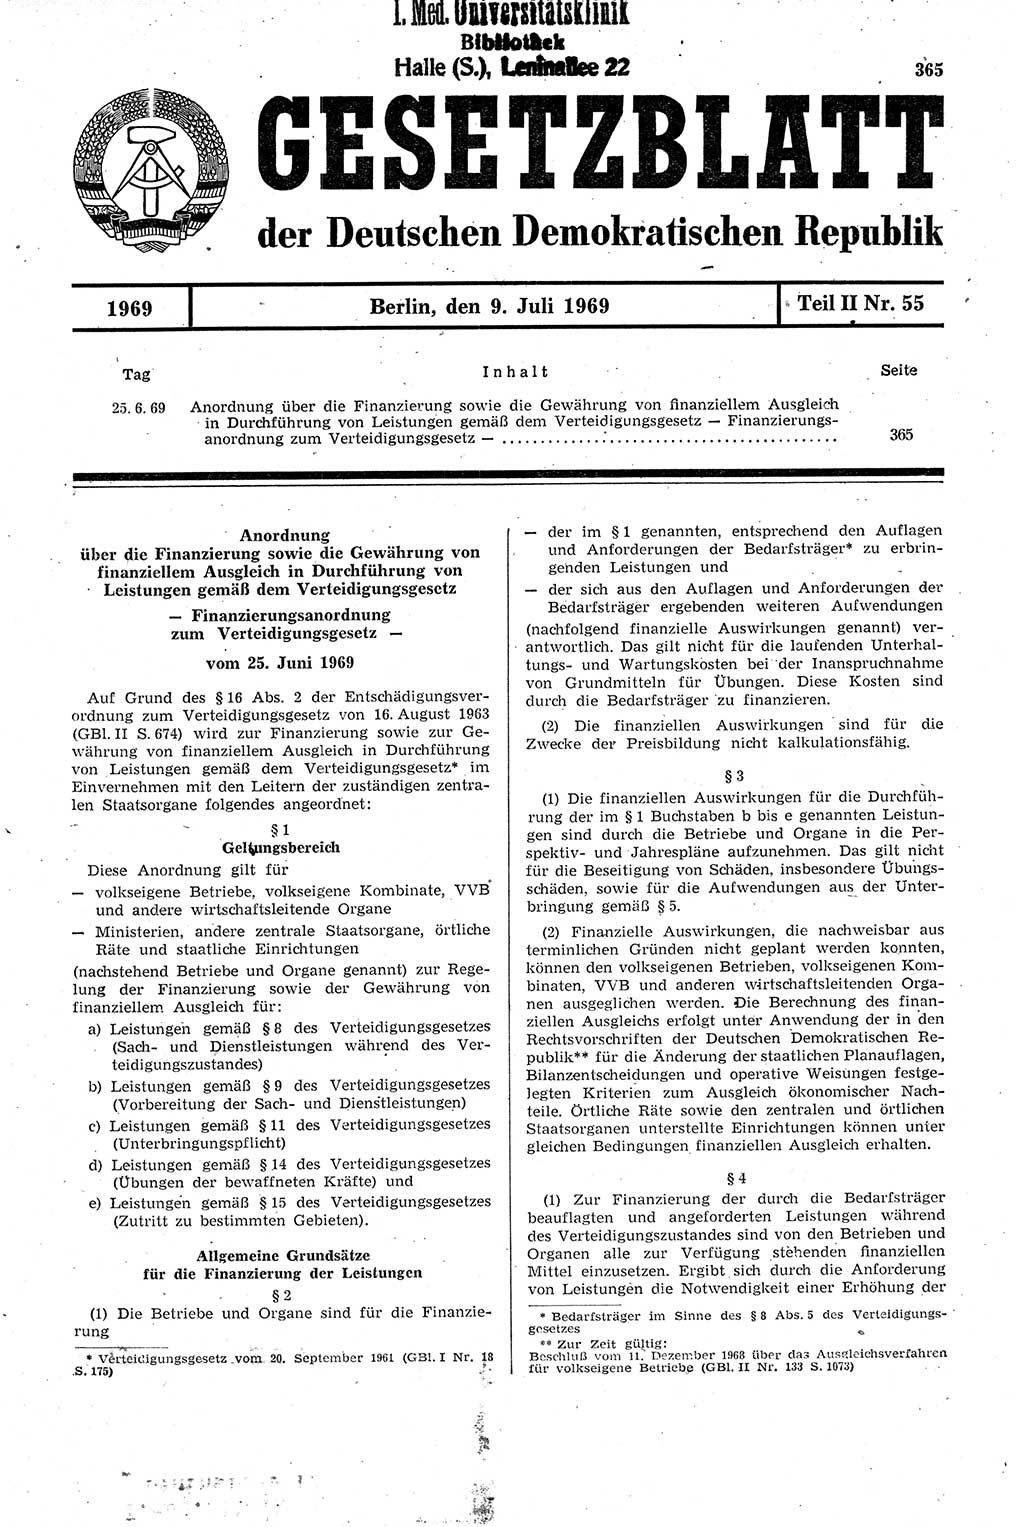 Gesetzblatt (GBl.) der Deutschen Demokratischen Republik (DDR) Teil ⅠⅠ 1969, Seite 365 (GBl. DDR ⅠⅠ 1969, S. 365)